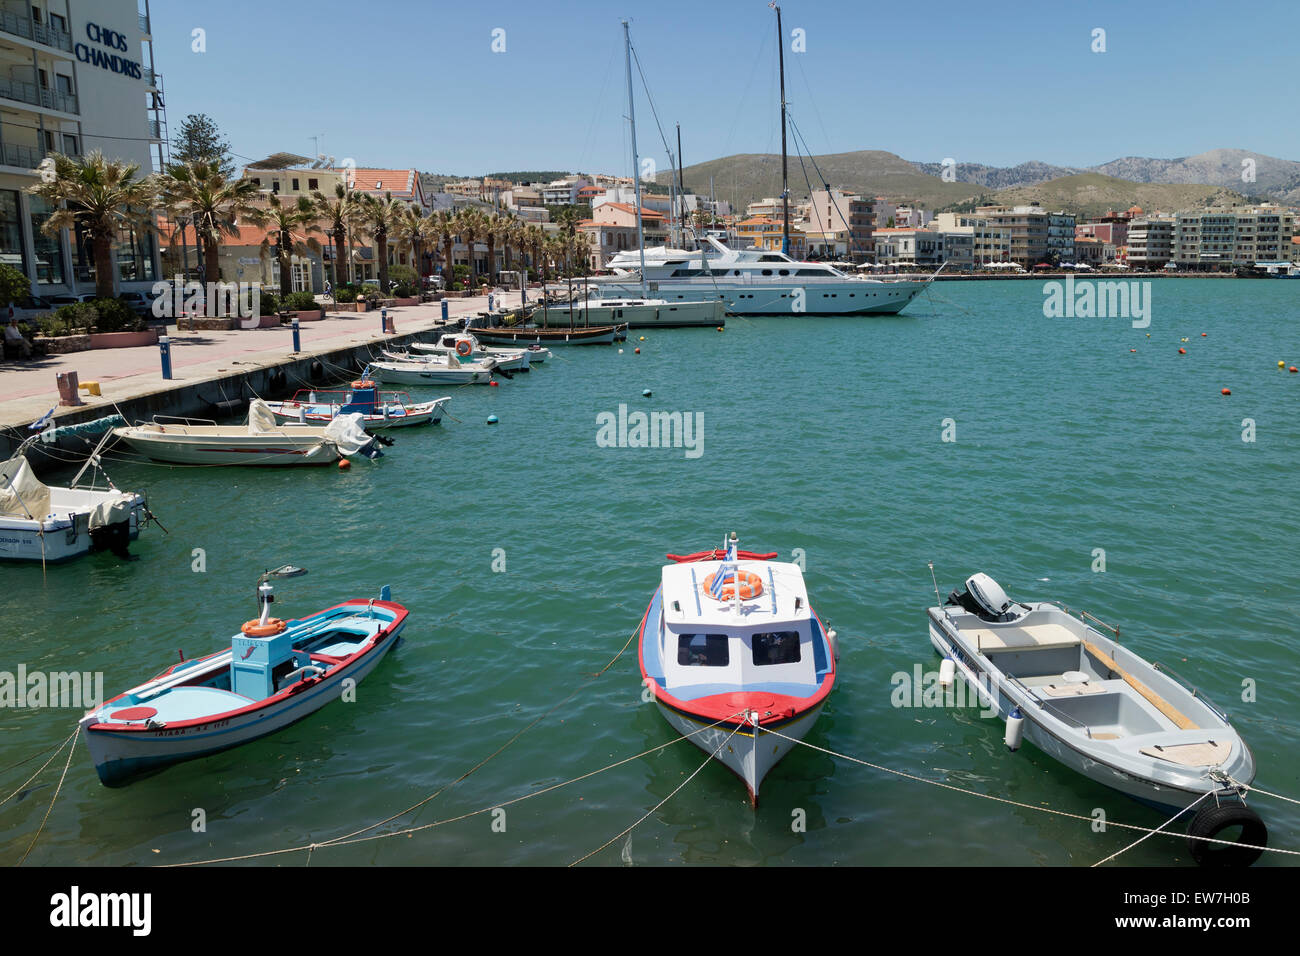 Bateaux dans le port de la ville de Chios, à l'île de Chios, Grèce Banque D'Images